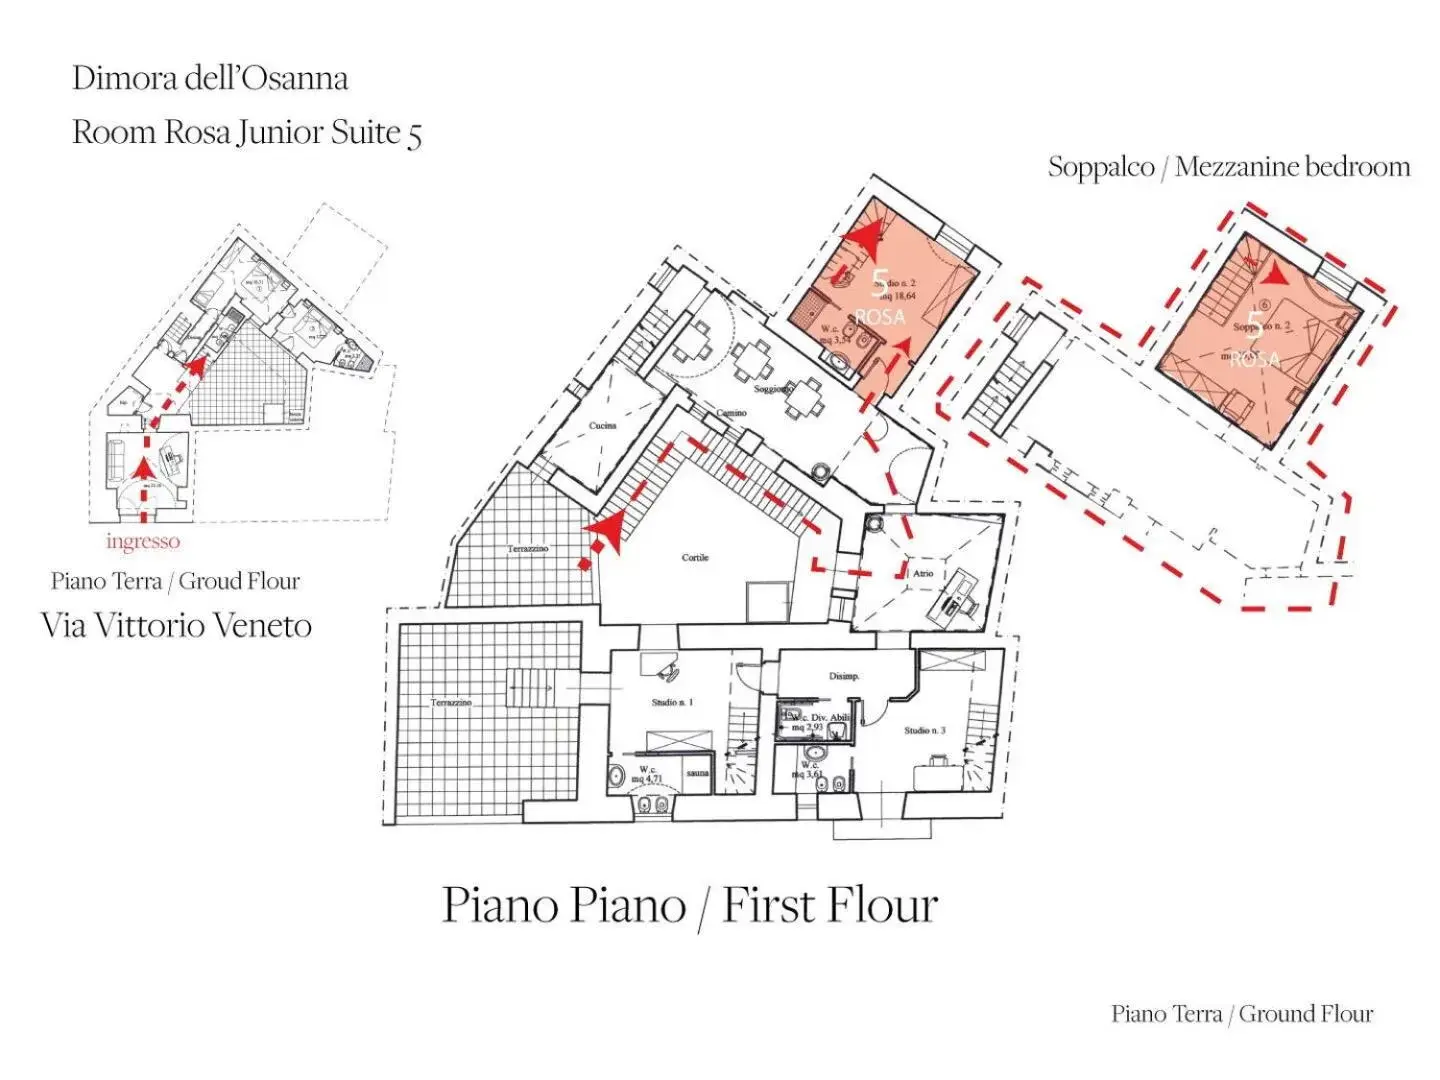 Floor Plan in Dimora Dell'Osanna Raro Villas Smart Rooms Collection